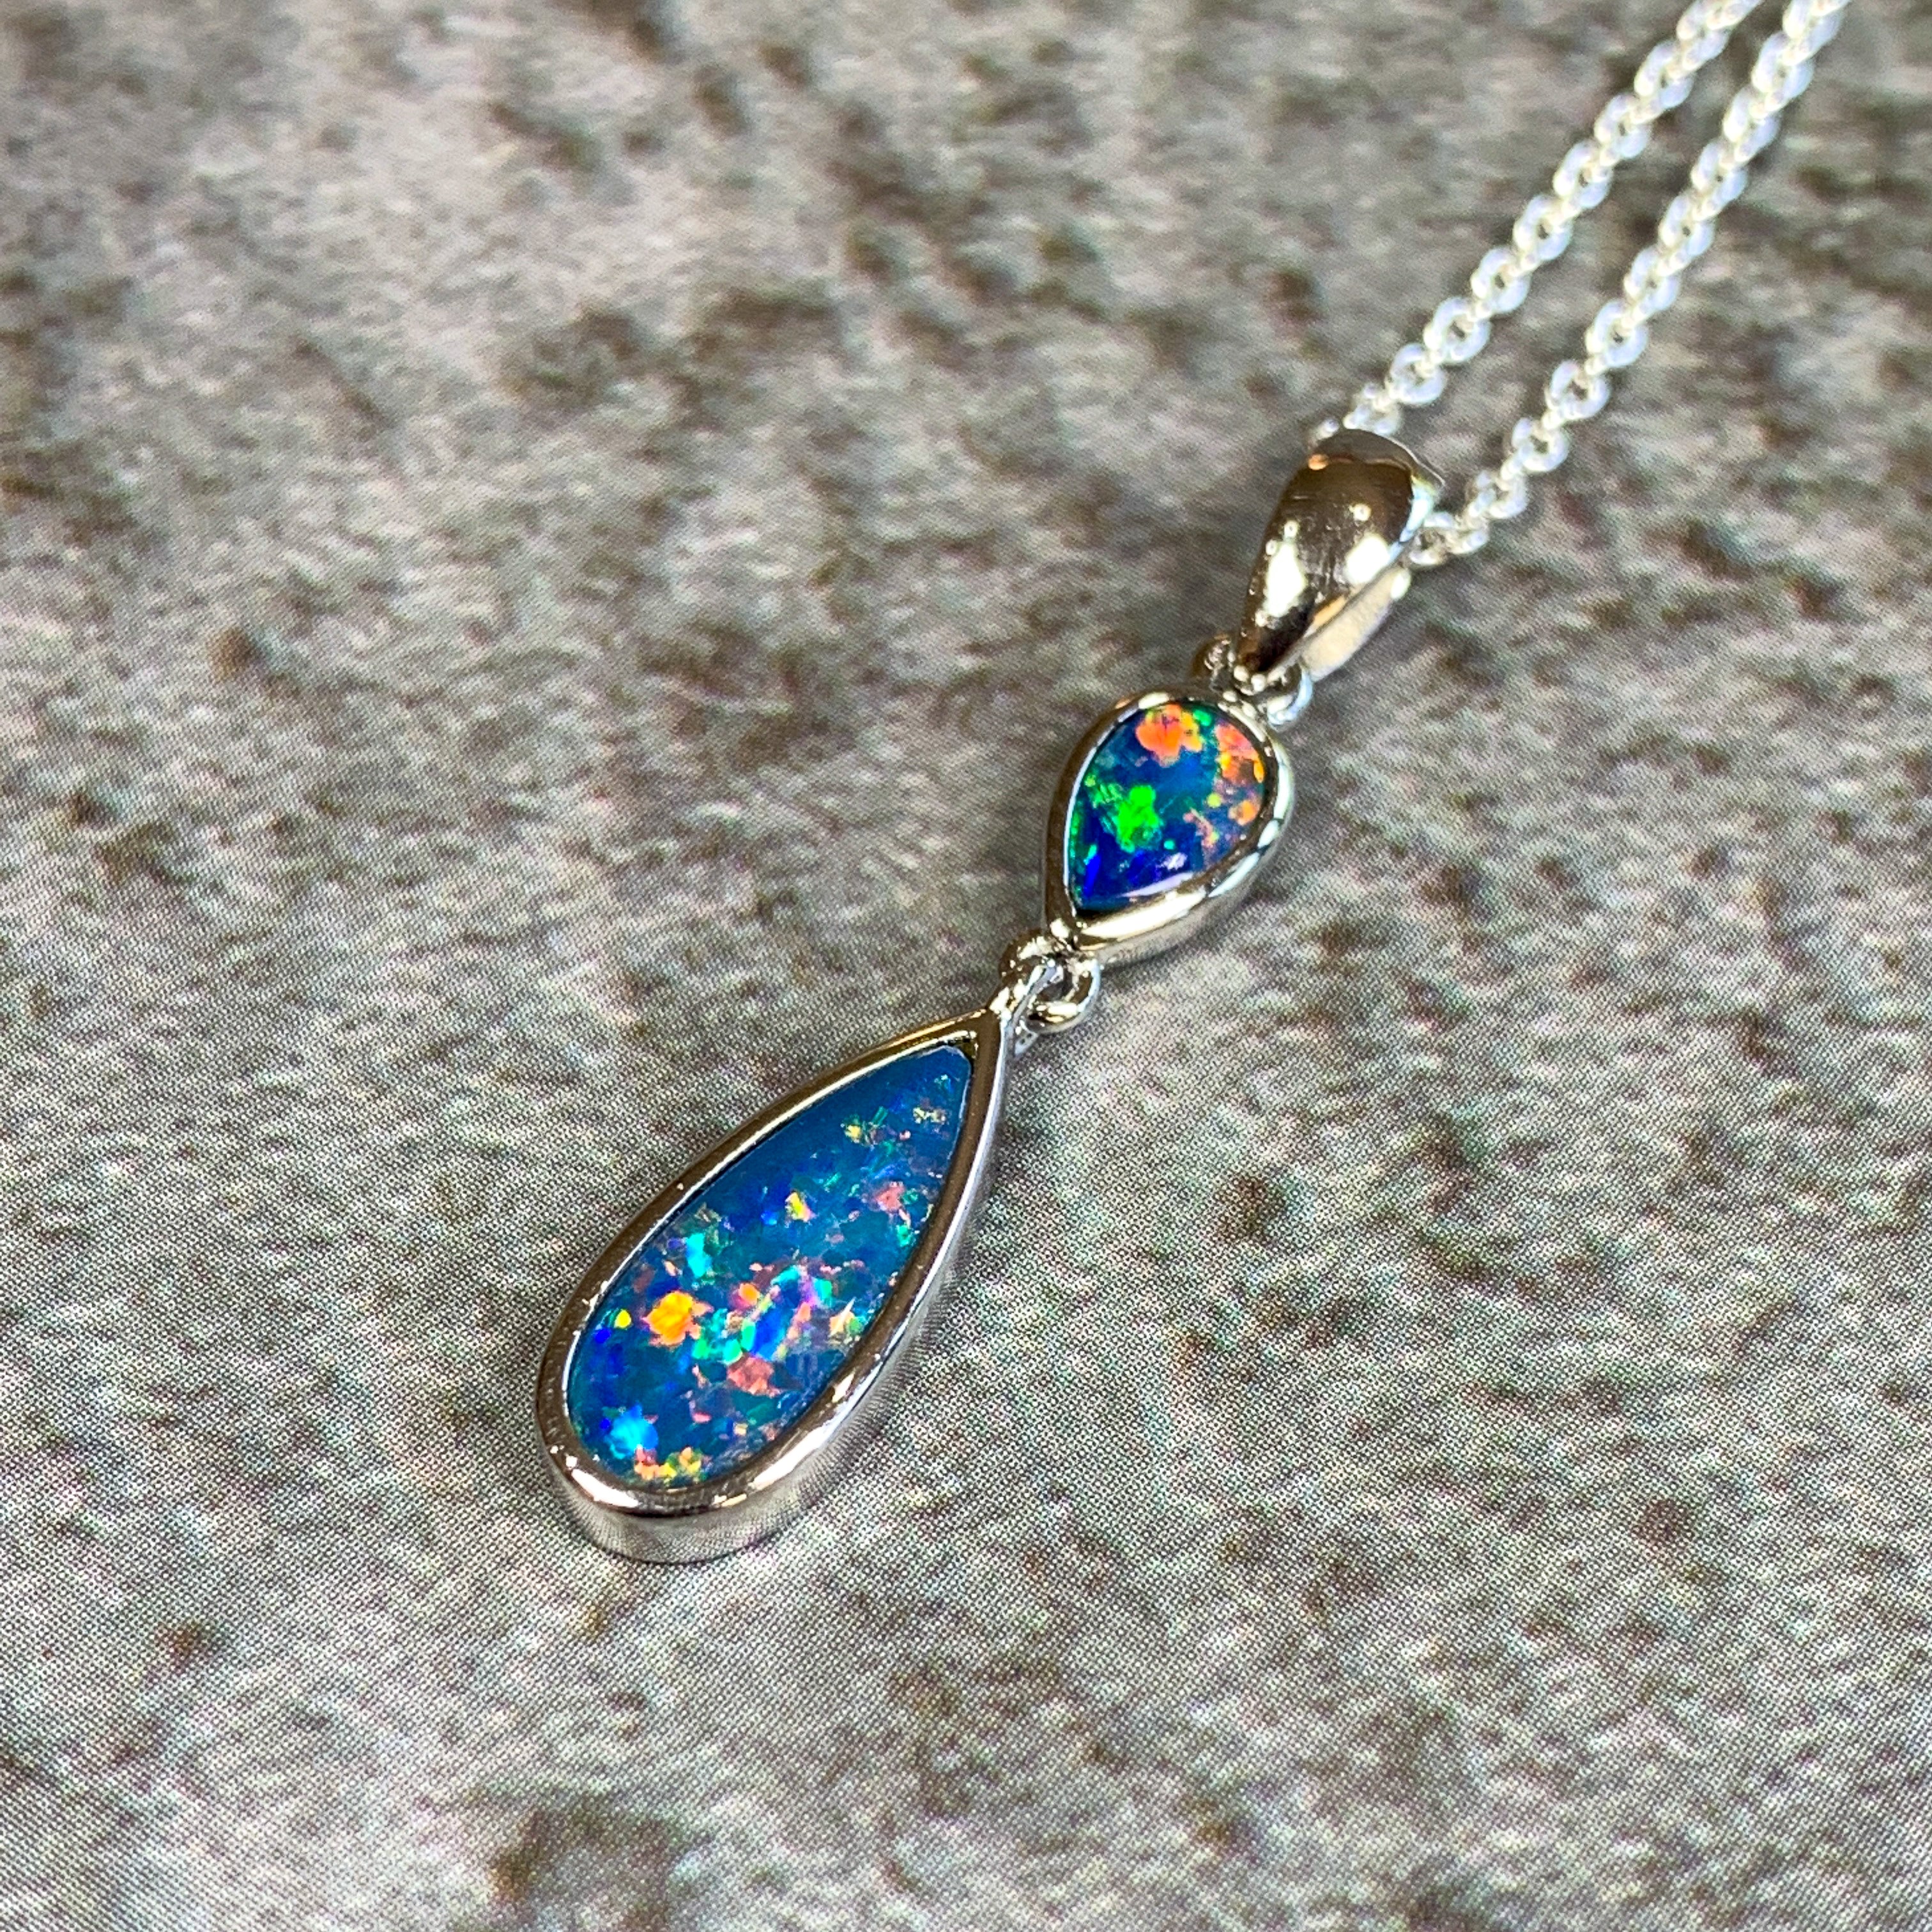 Sterling Silver Opal pear shape dangling pendant - Masterpiece Jewellery Opal & Gems Sydney Australia | Online Shop